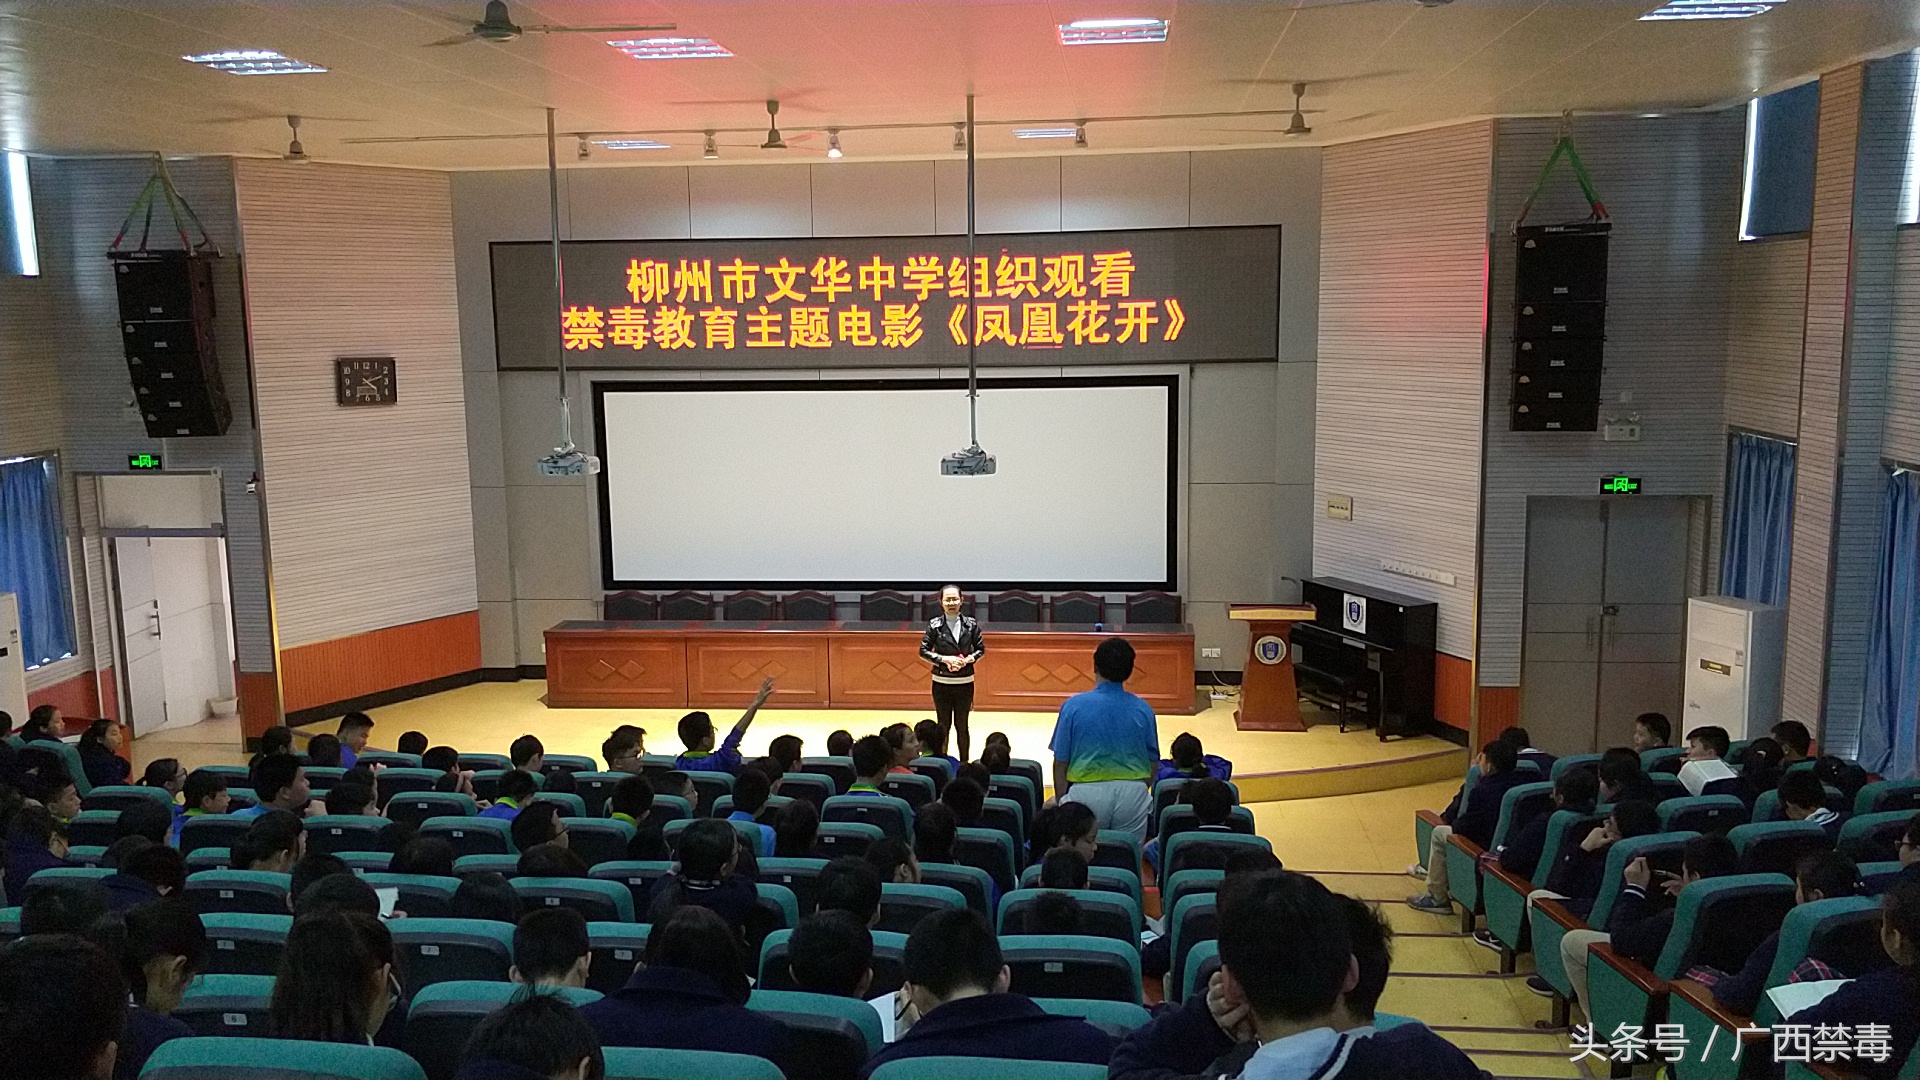 柳州市文华中学组织观看禁毒教育主题电影《凤凰花开》